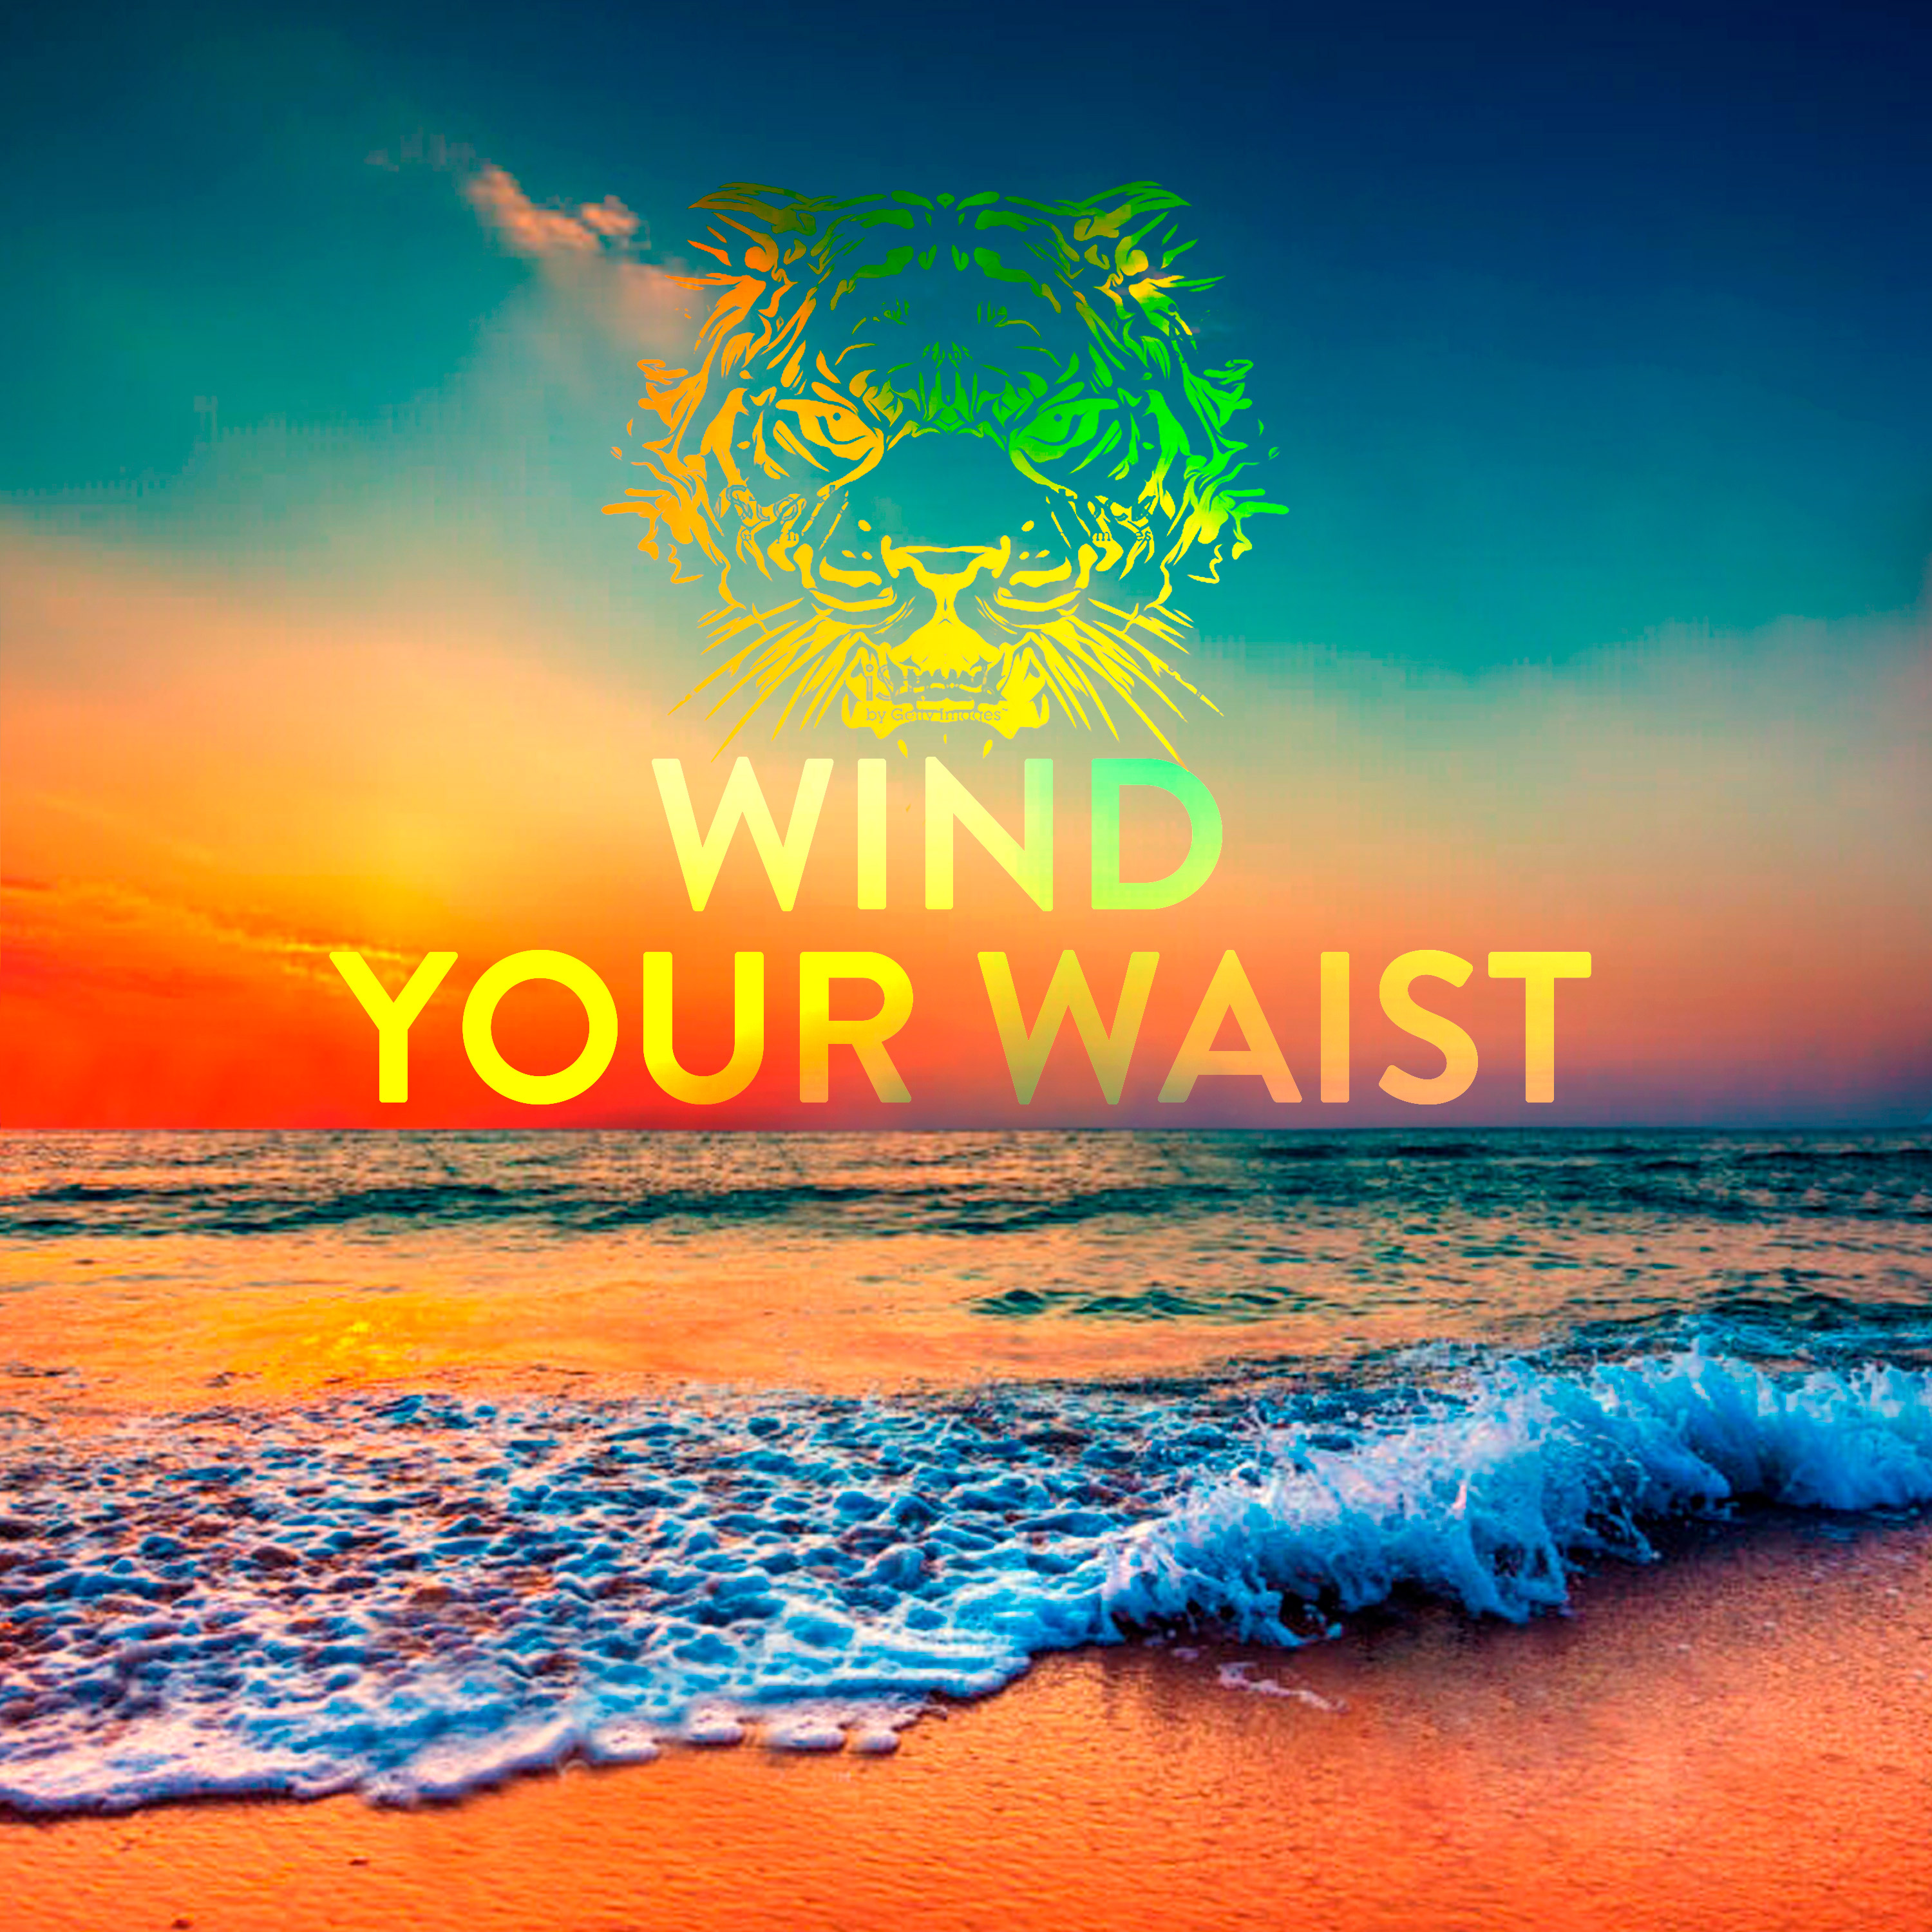 Wind Your Waist album artwork